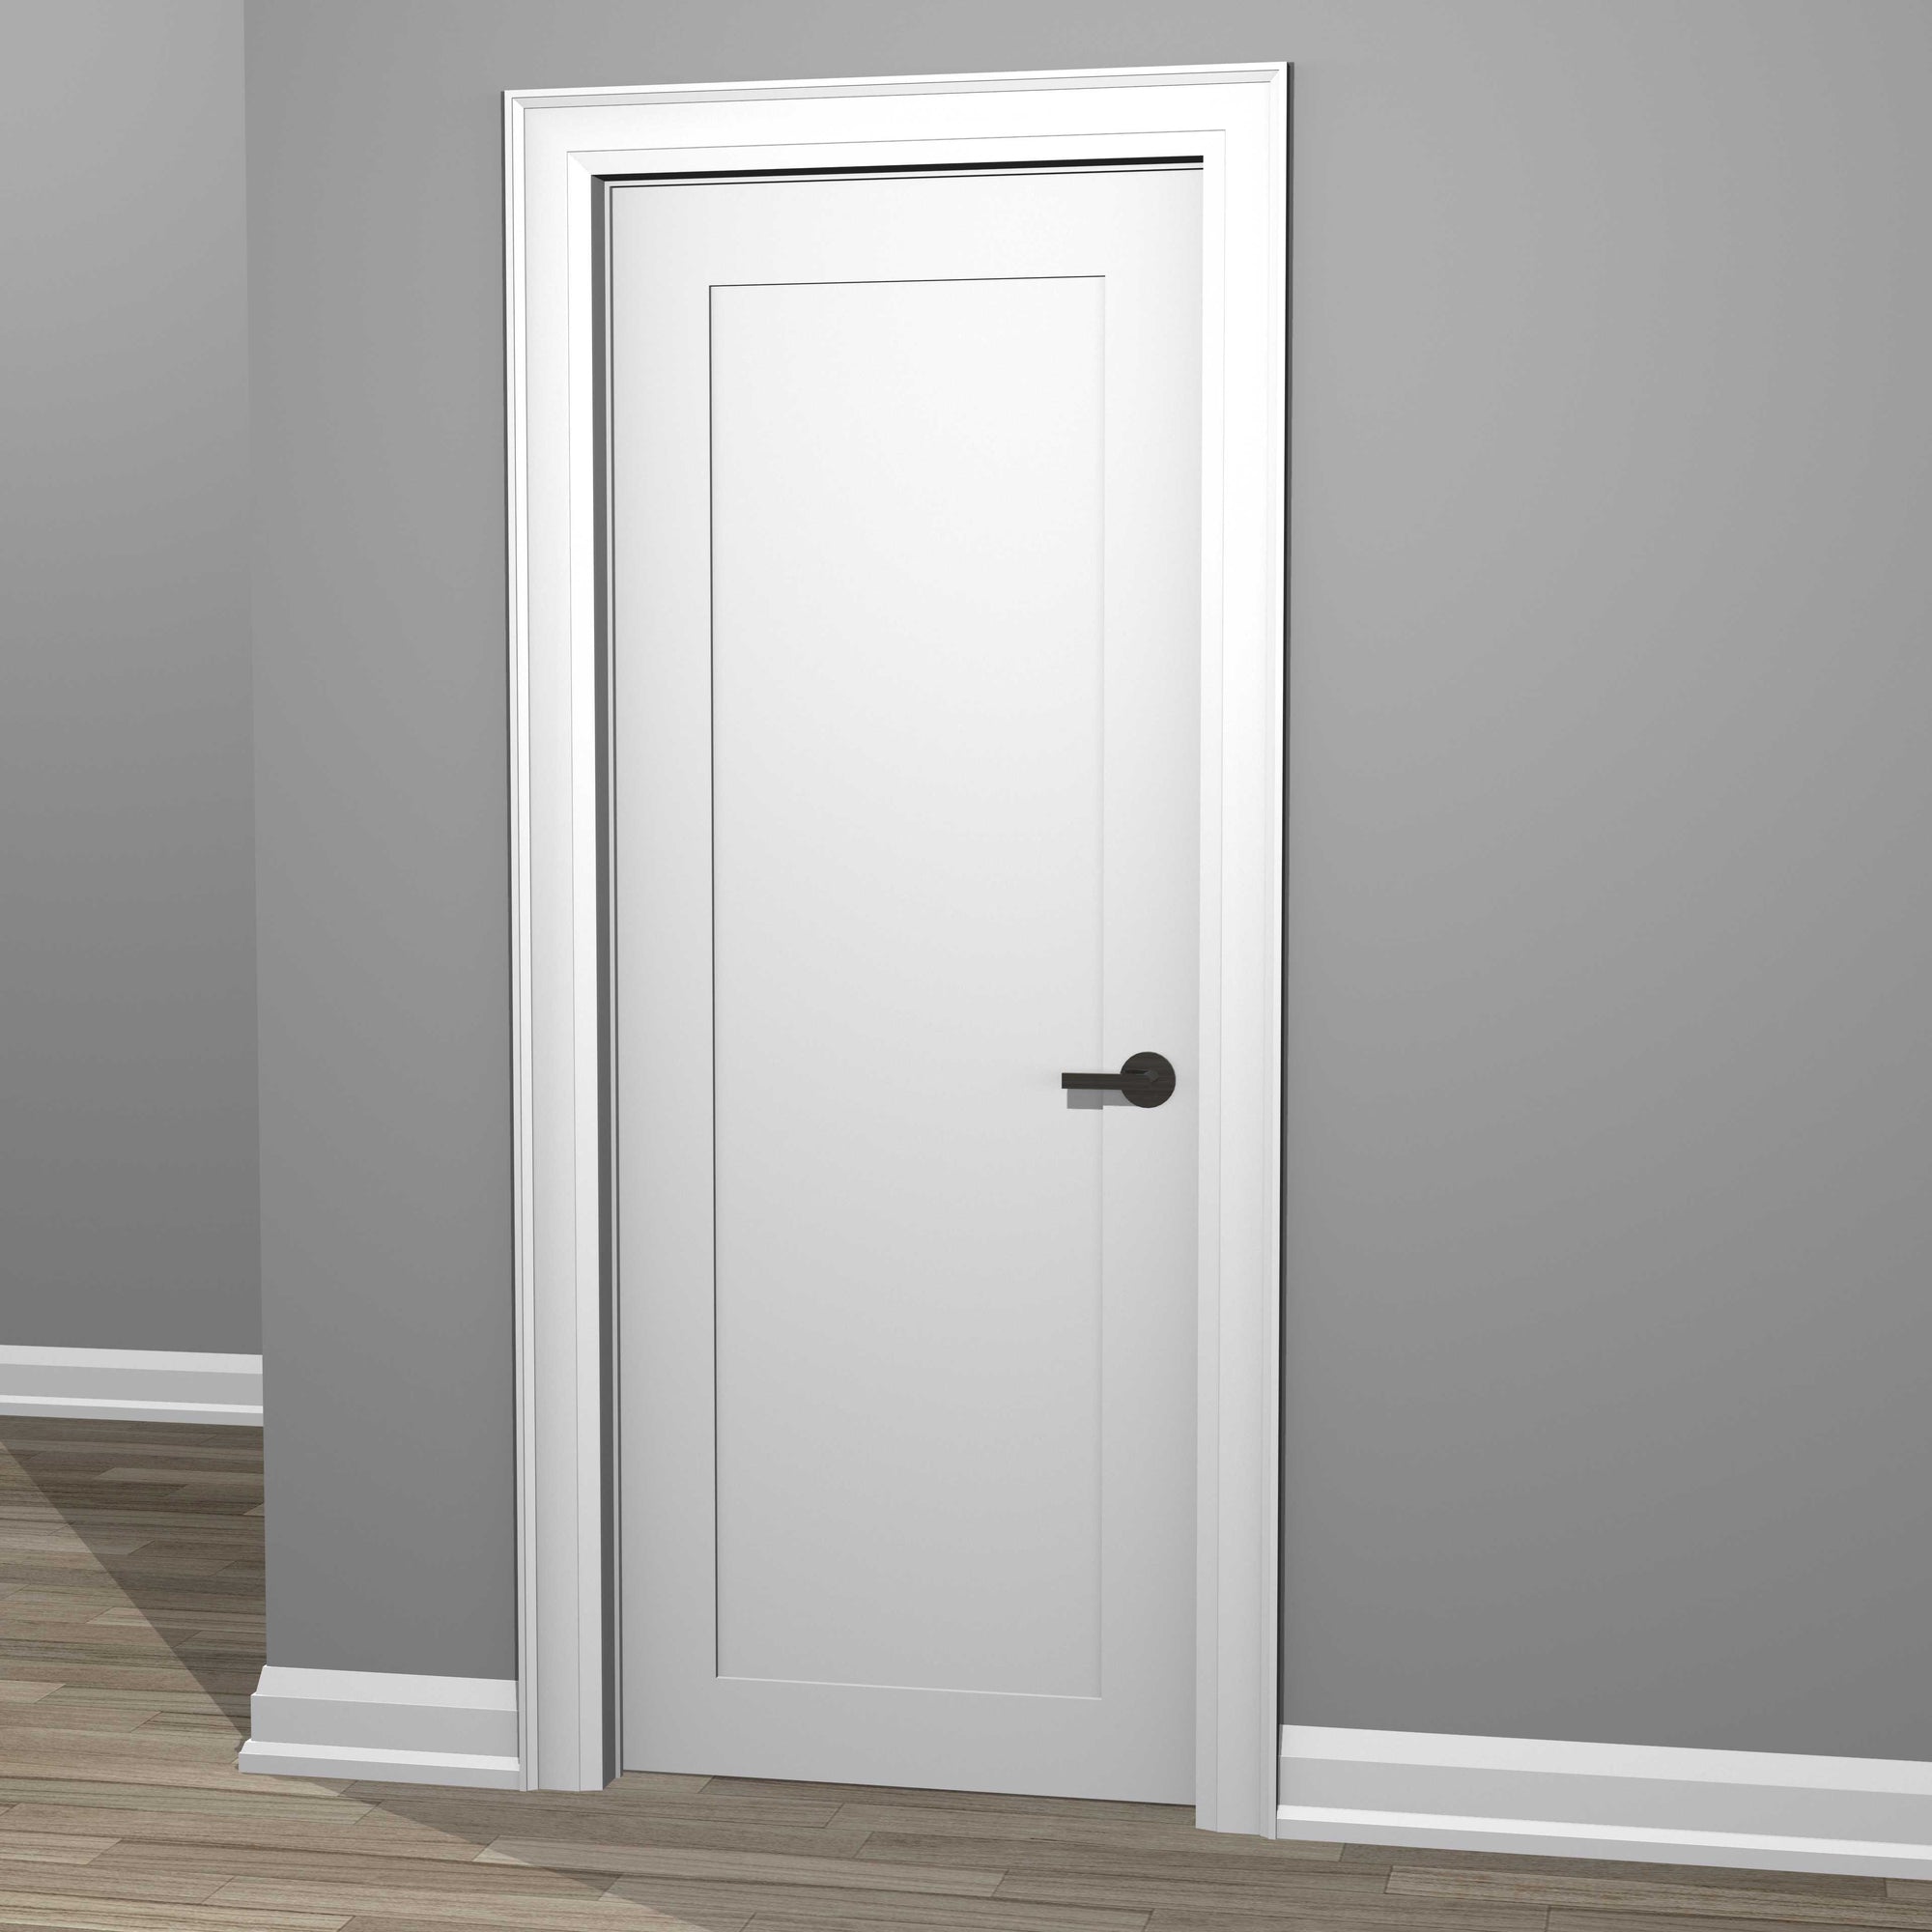 Contemporary Wood Door Stop Trim